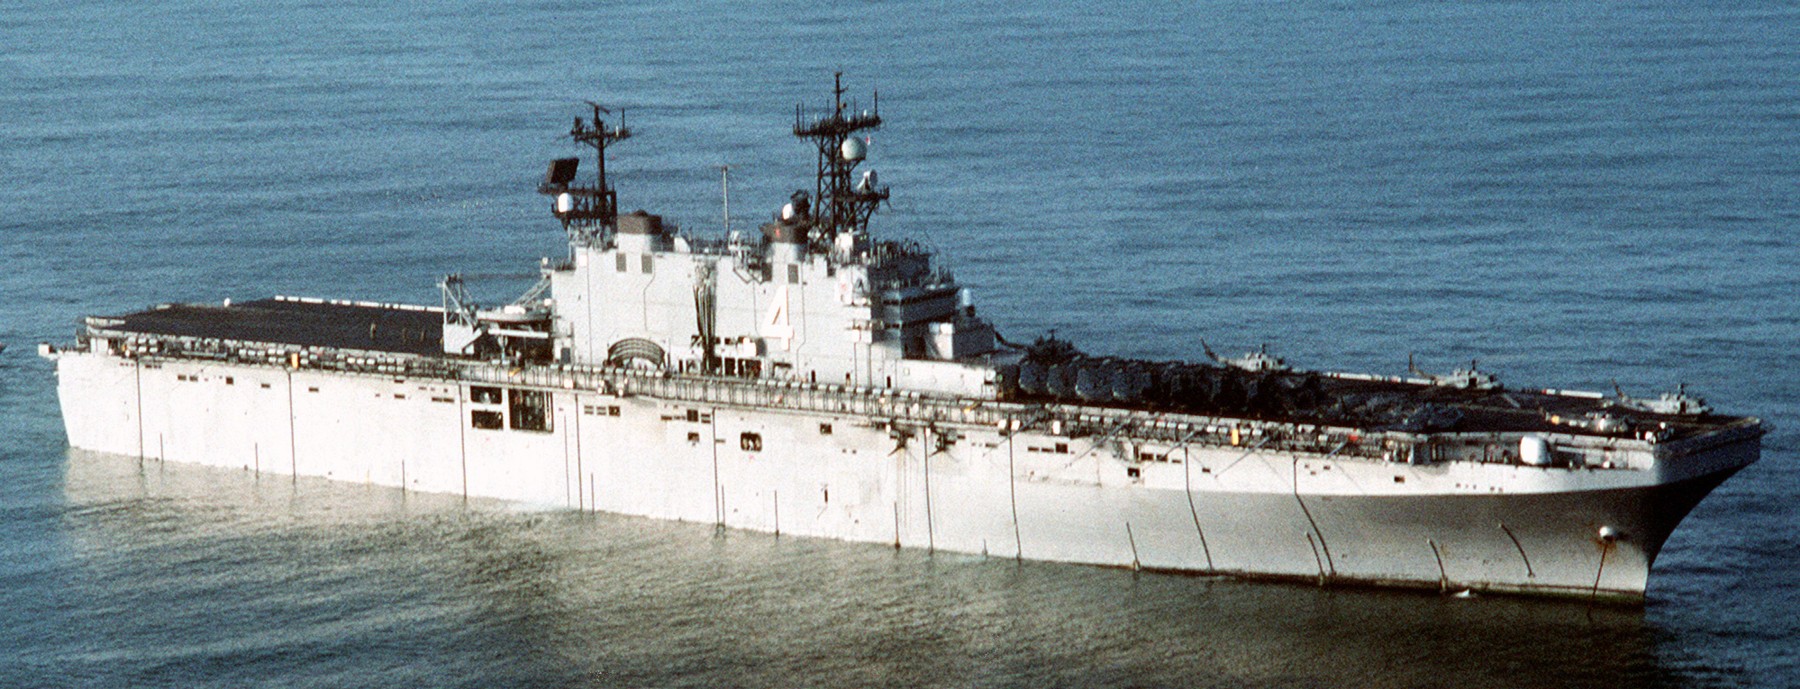 lha-4 uss nassau tarawa class amphibious assault ship us navy 128 desert storm